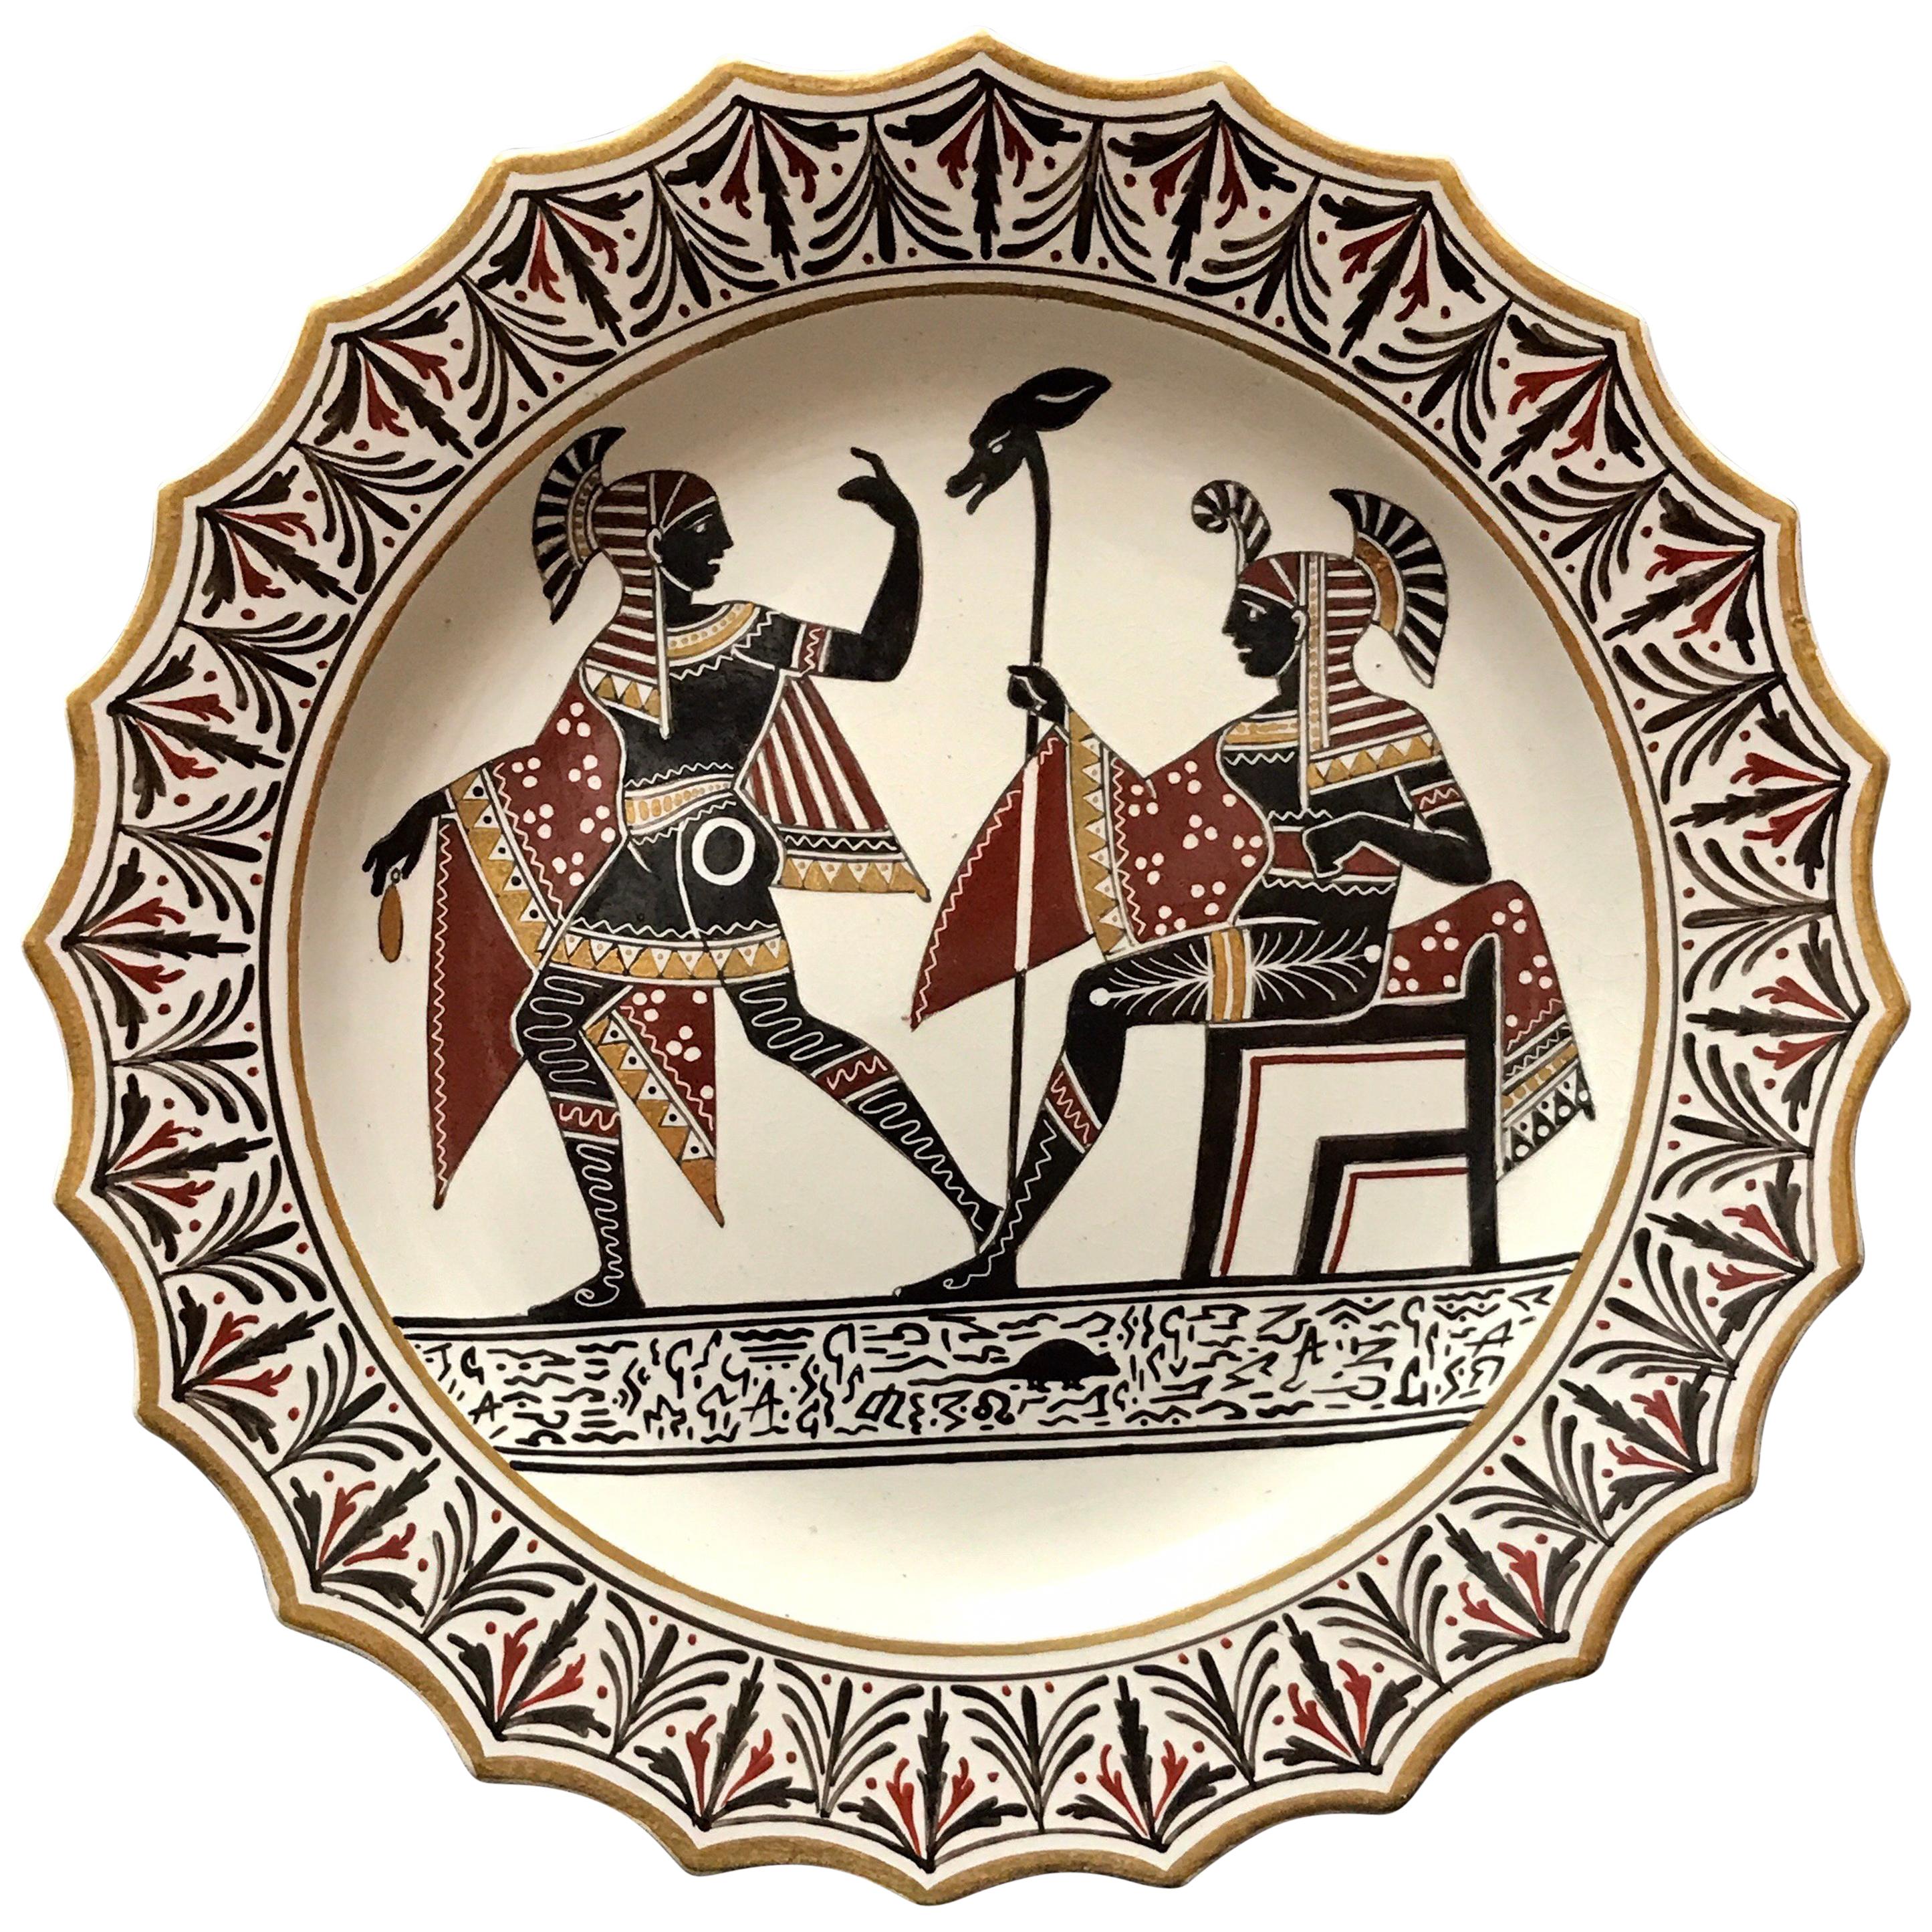 Giustiniani-Töpferwarenteller mit ägyptischem Motiv und vergoldeten Highlights, Rodent im Angebot